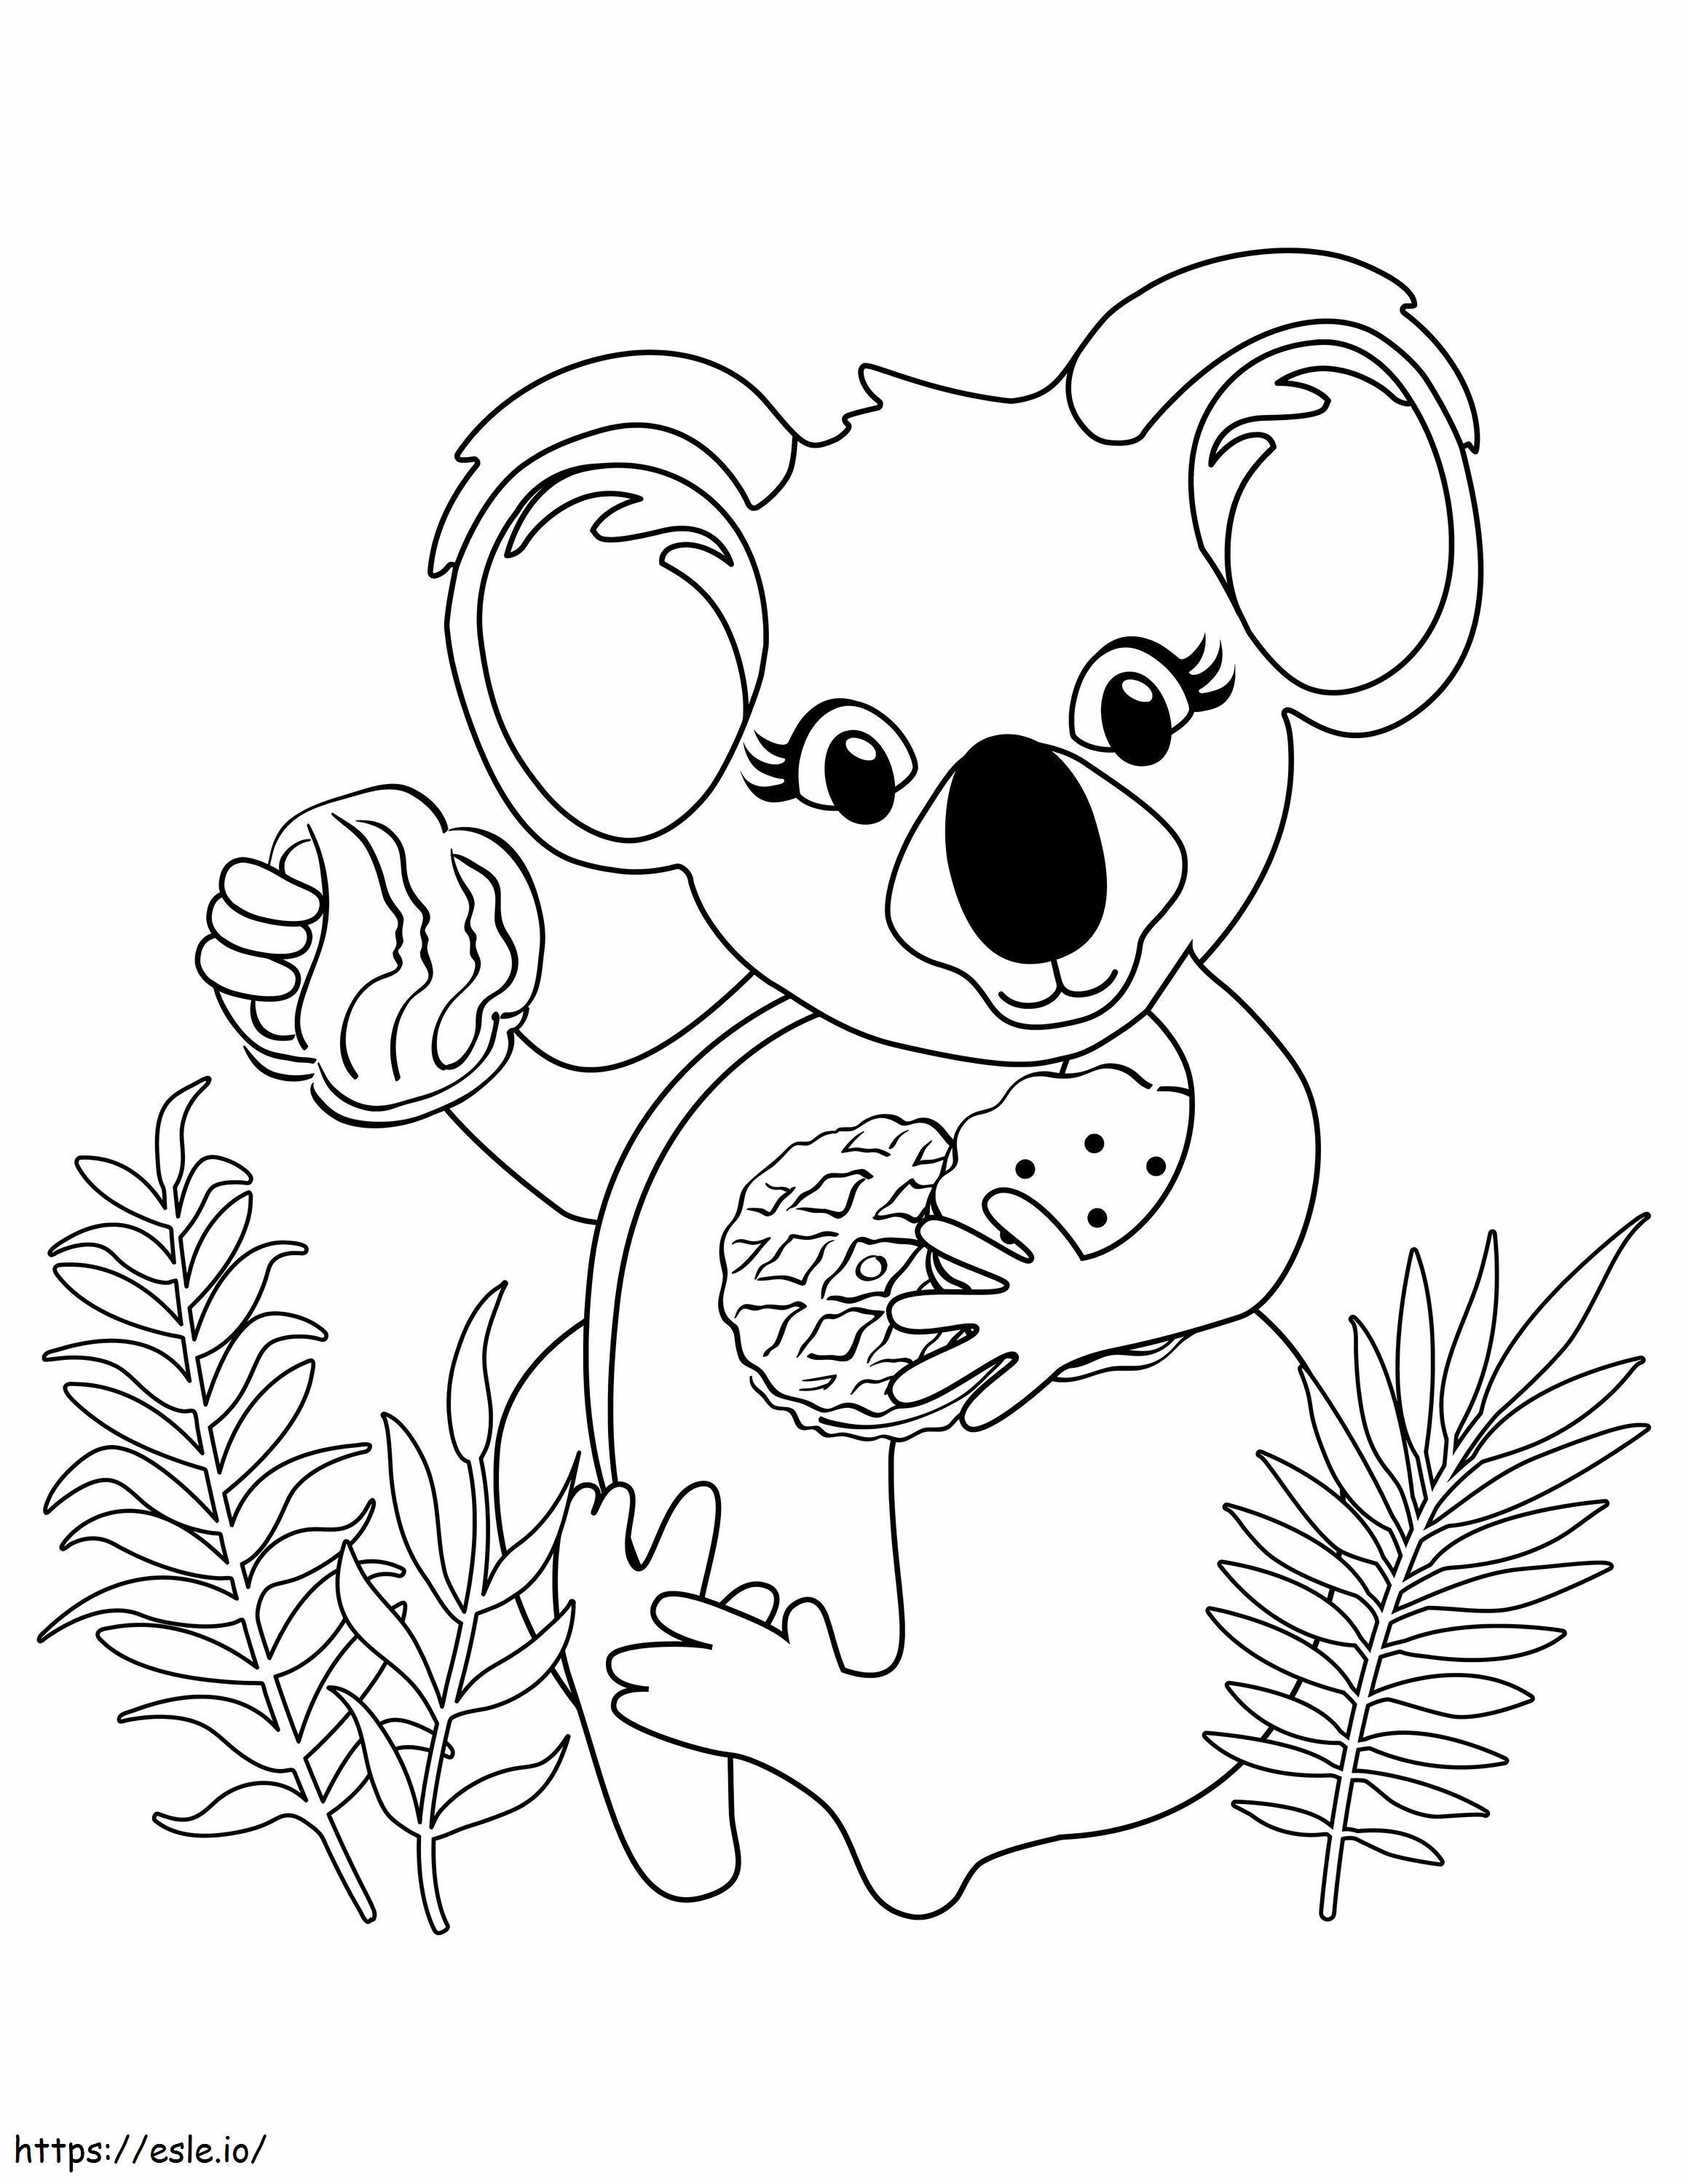 Koala sütikkel kifestő